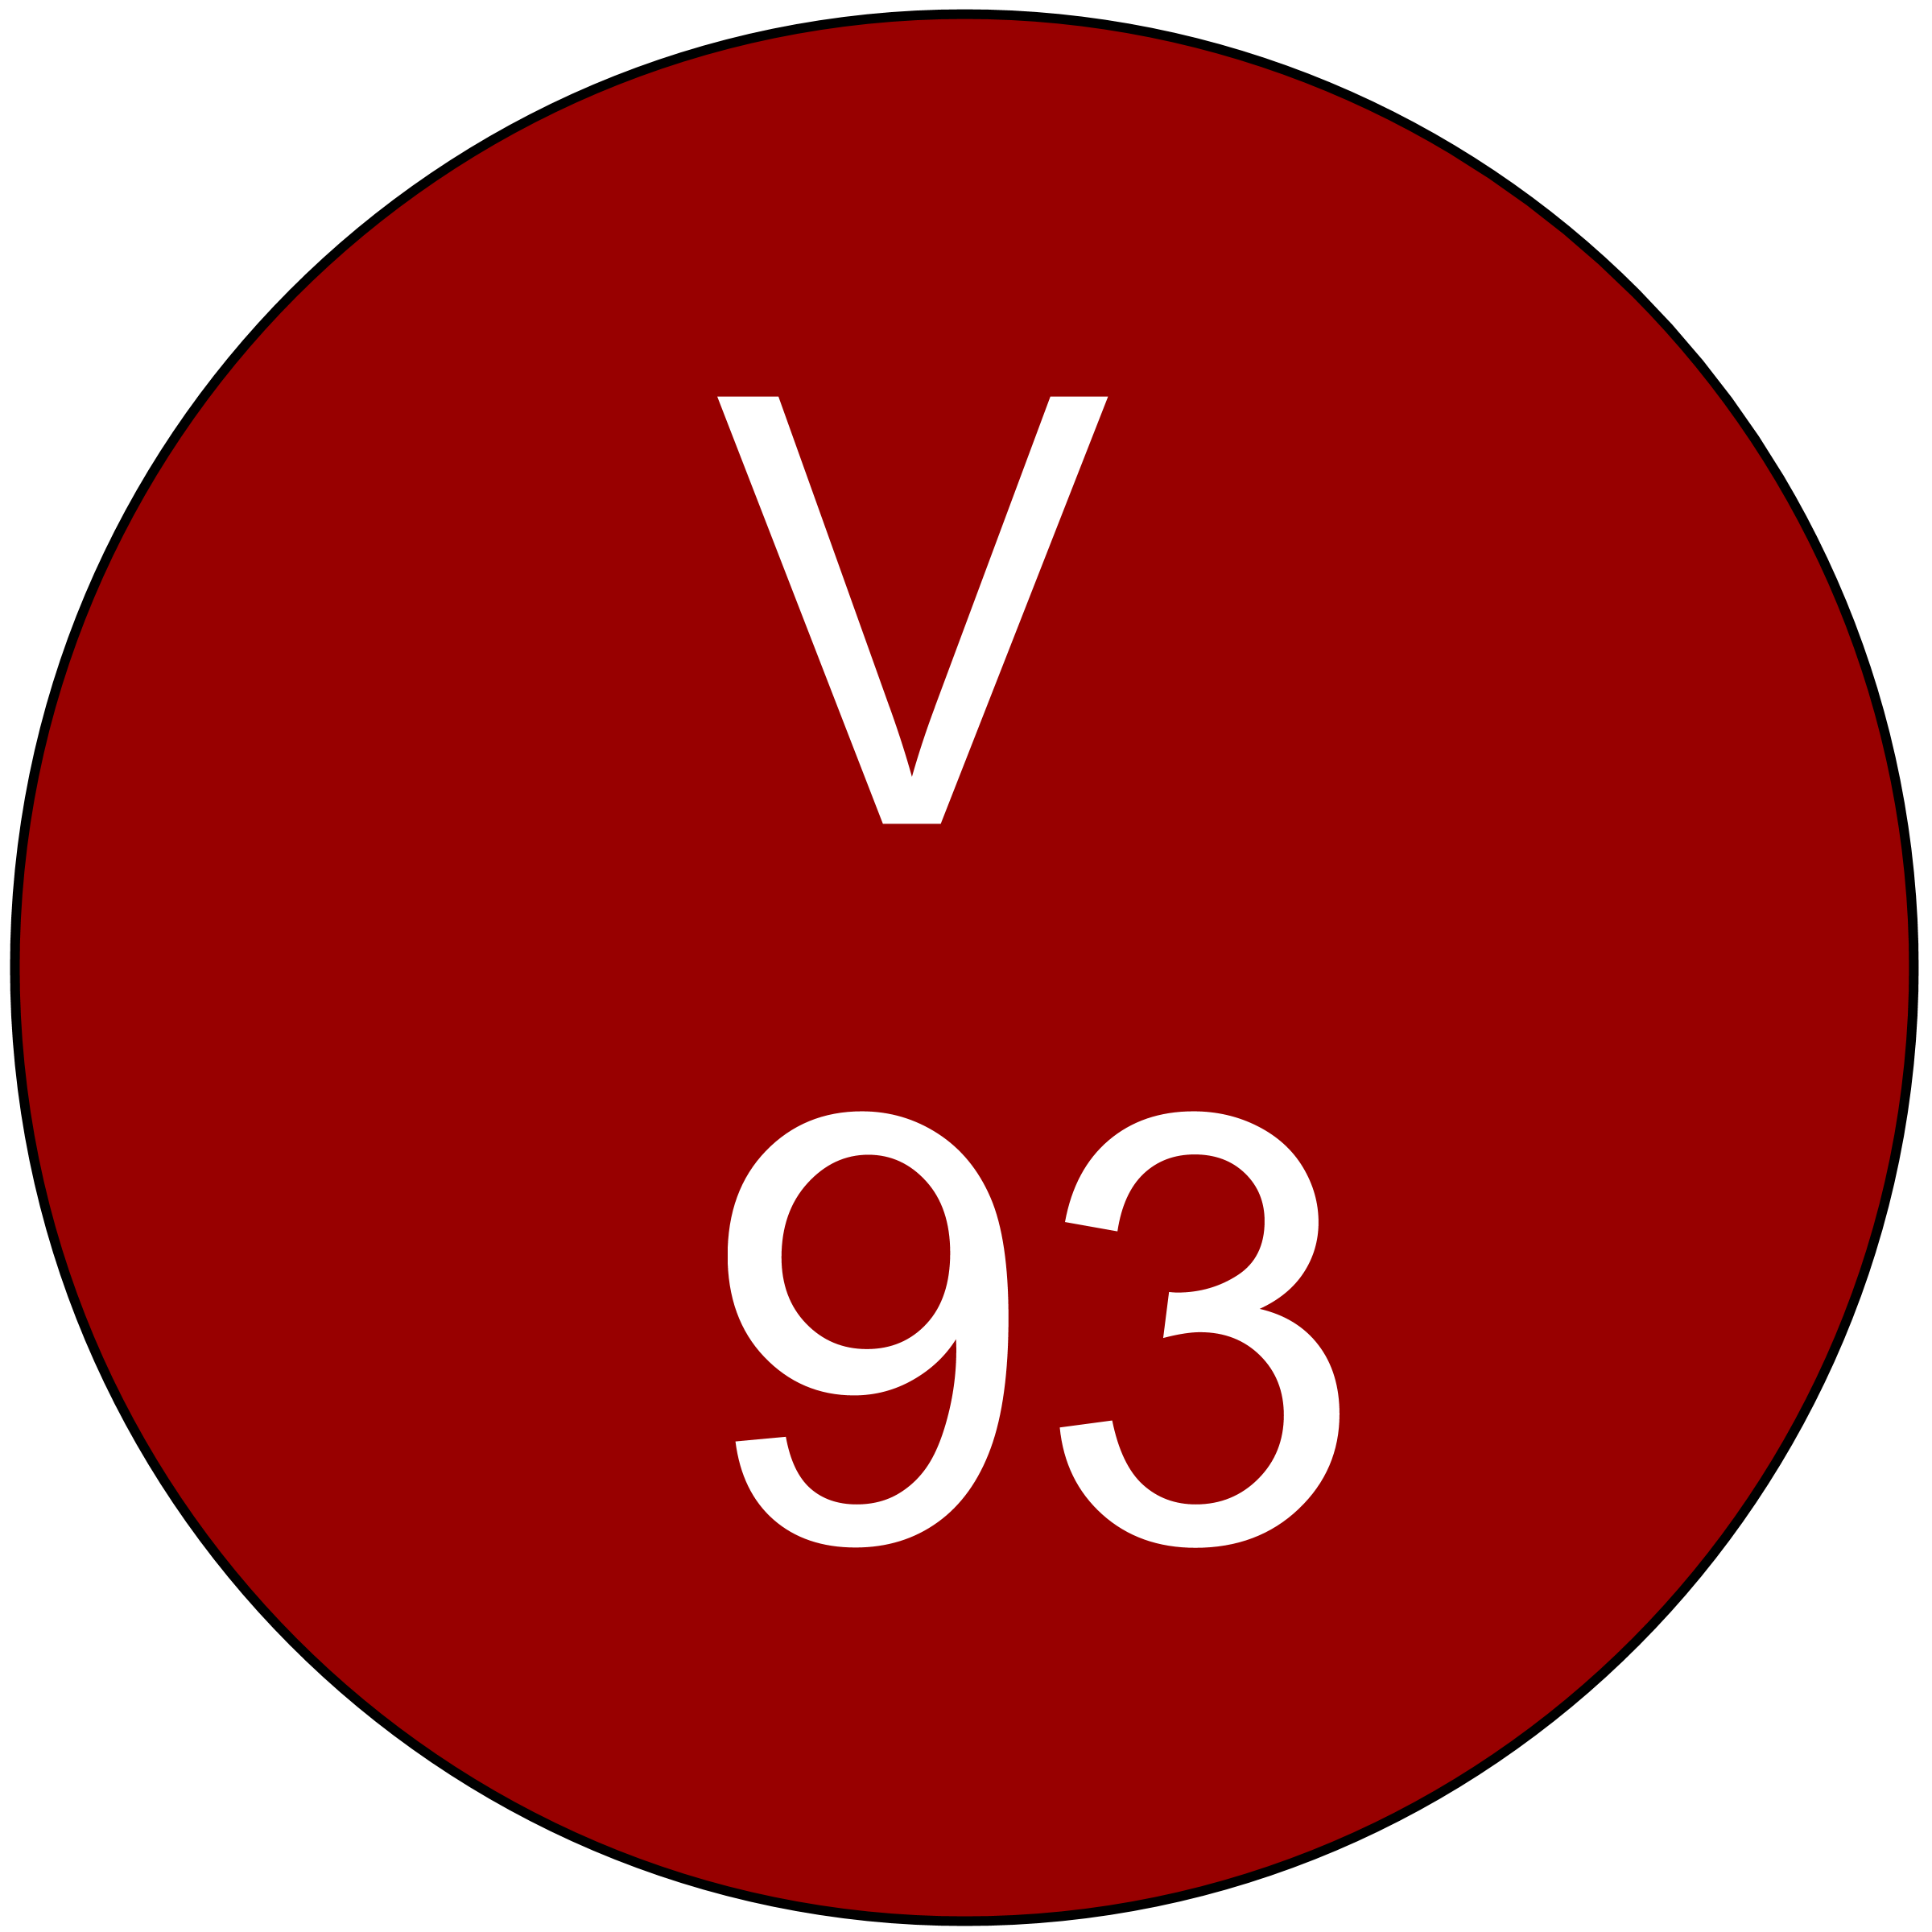 vinous-93-ratings